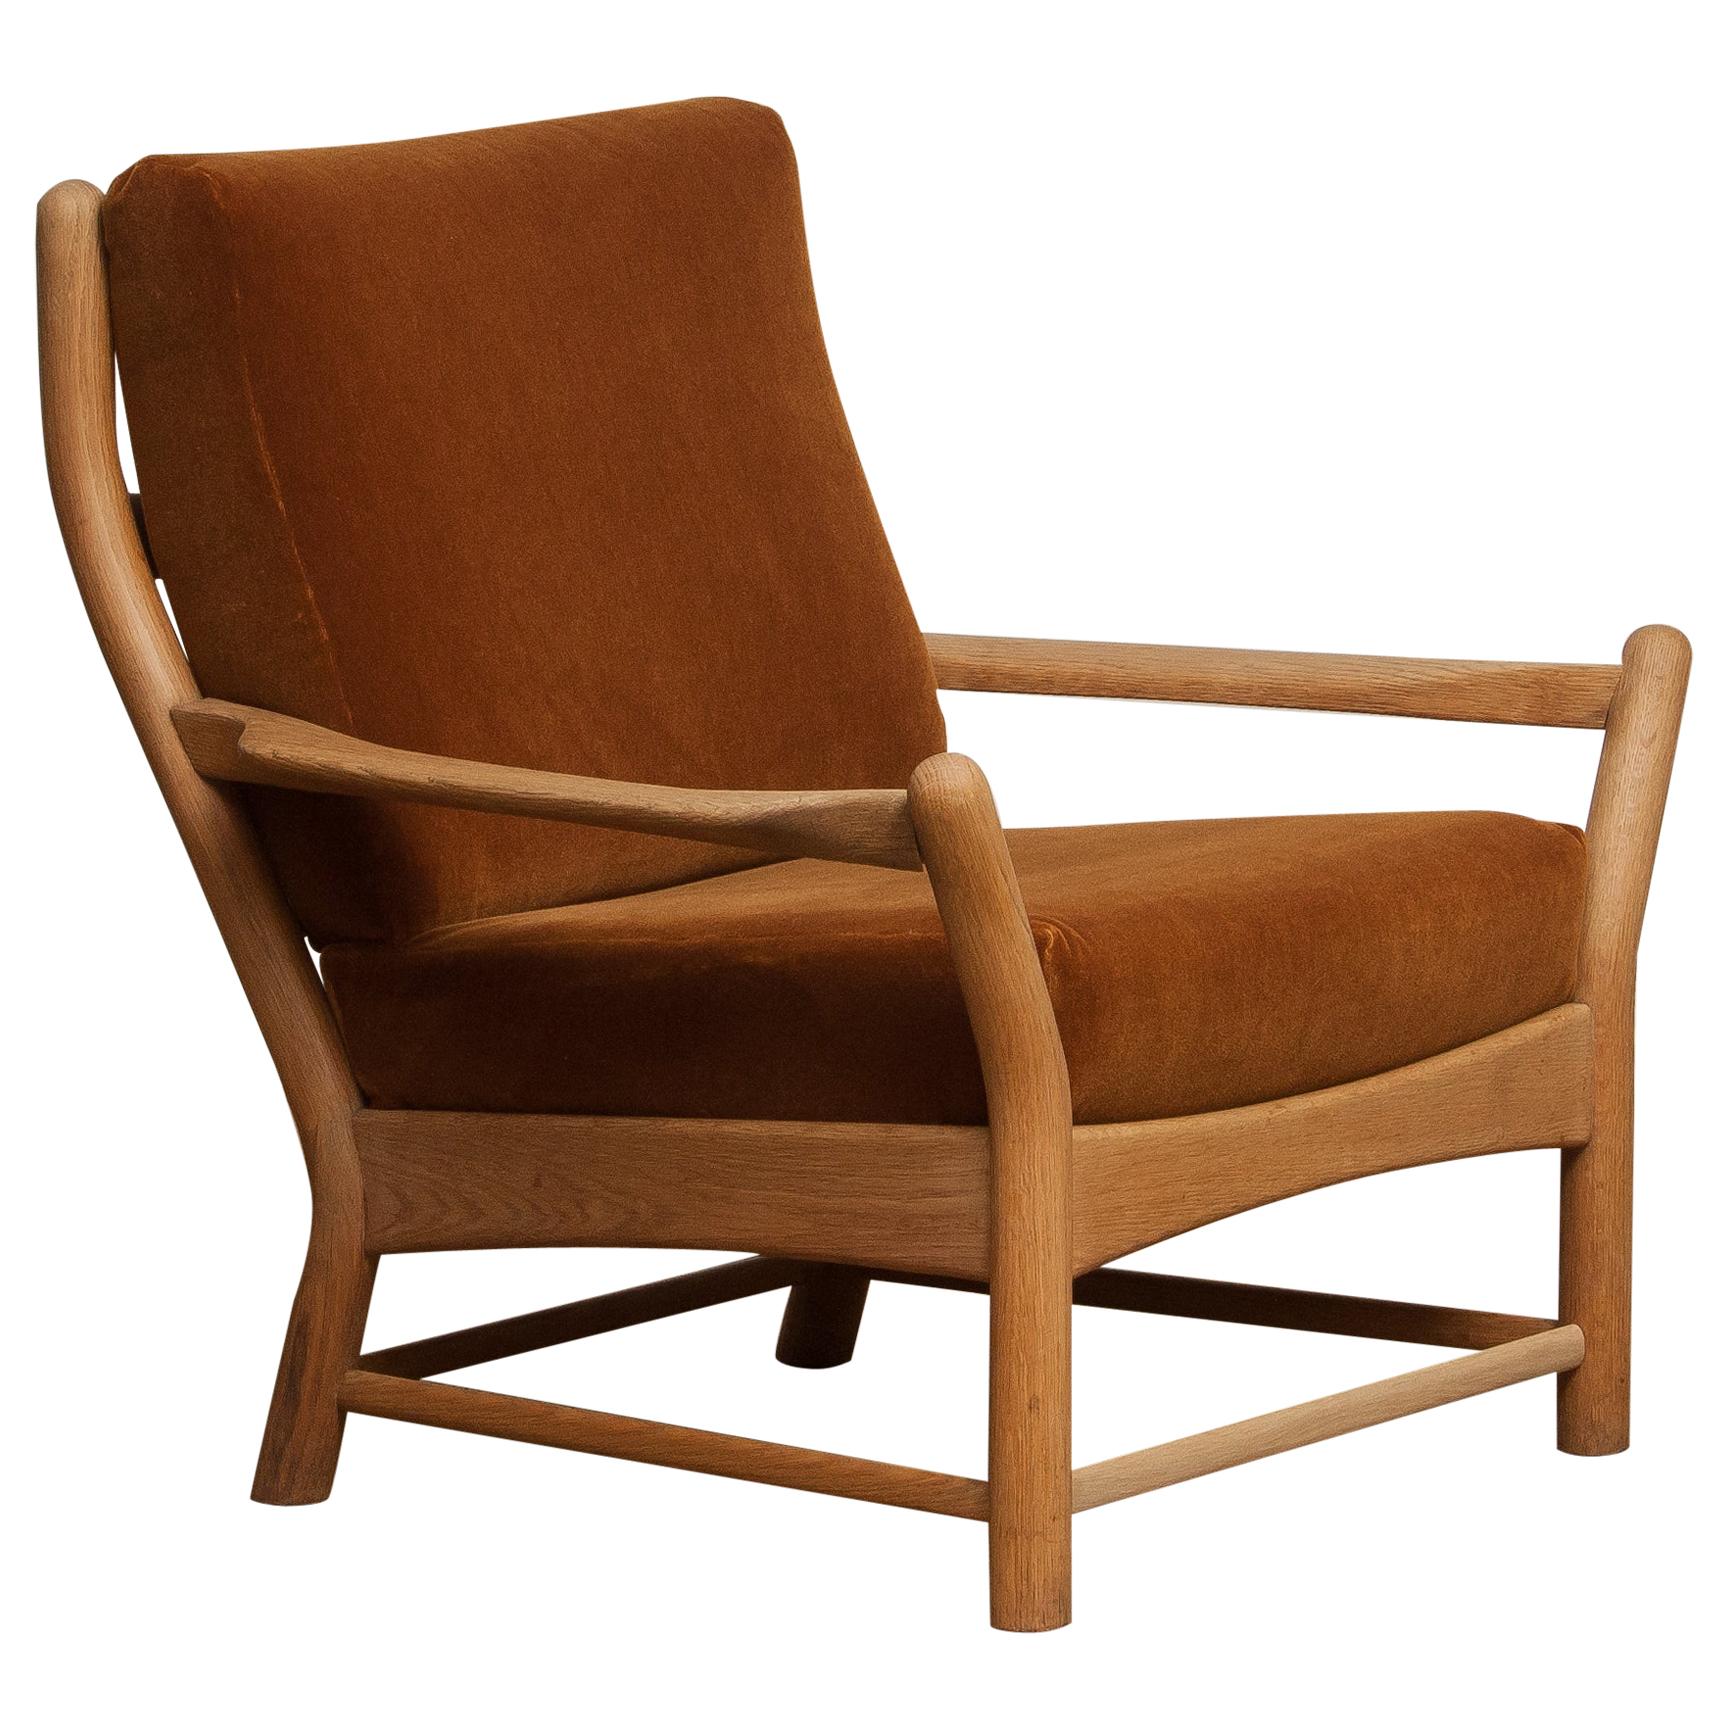 Danish 1950s, Oak and Brown Velvet Lounge Arm Easy Chair from Denmark